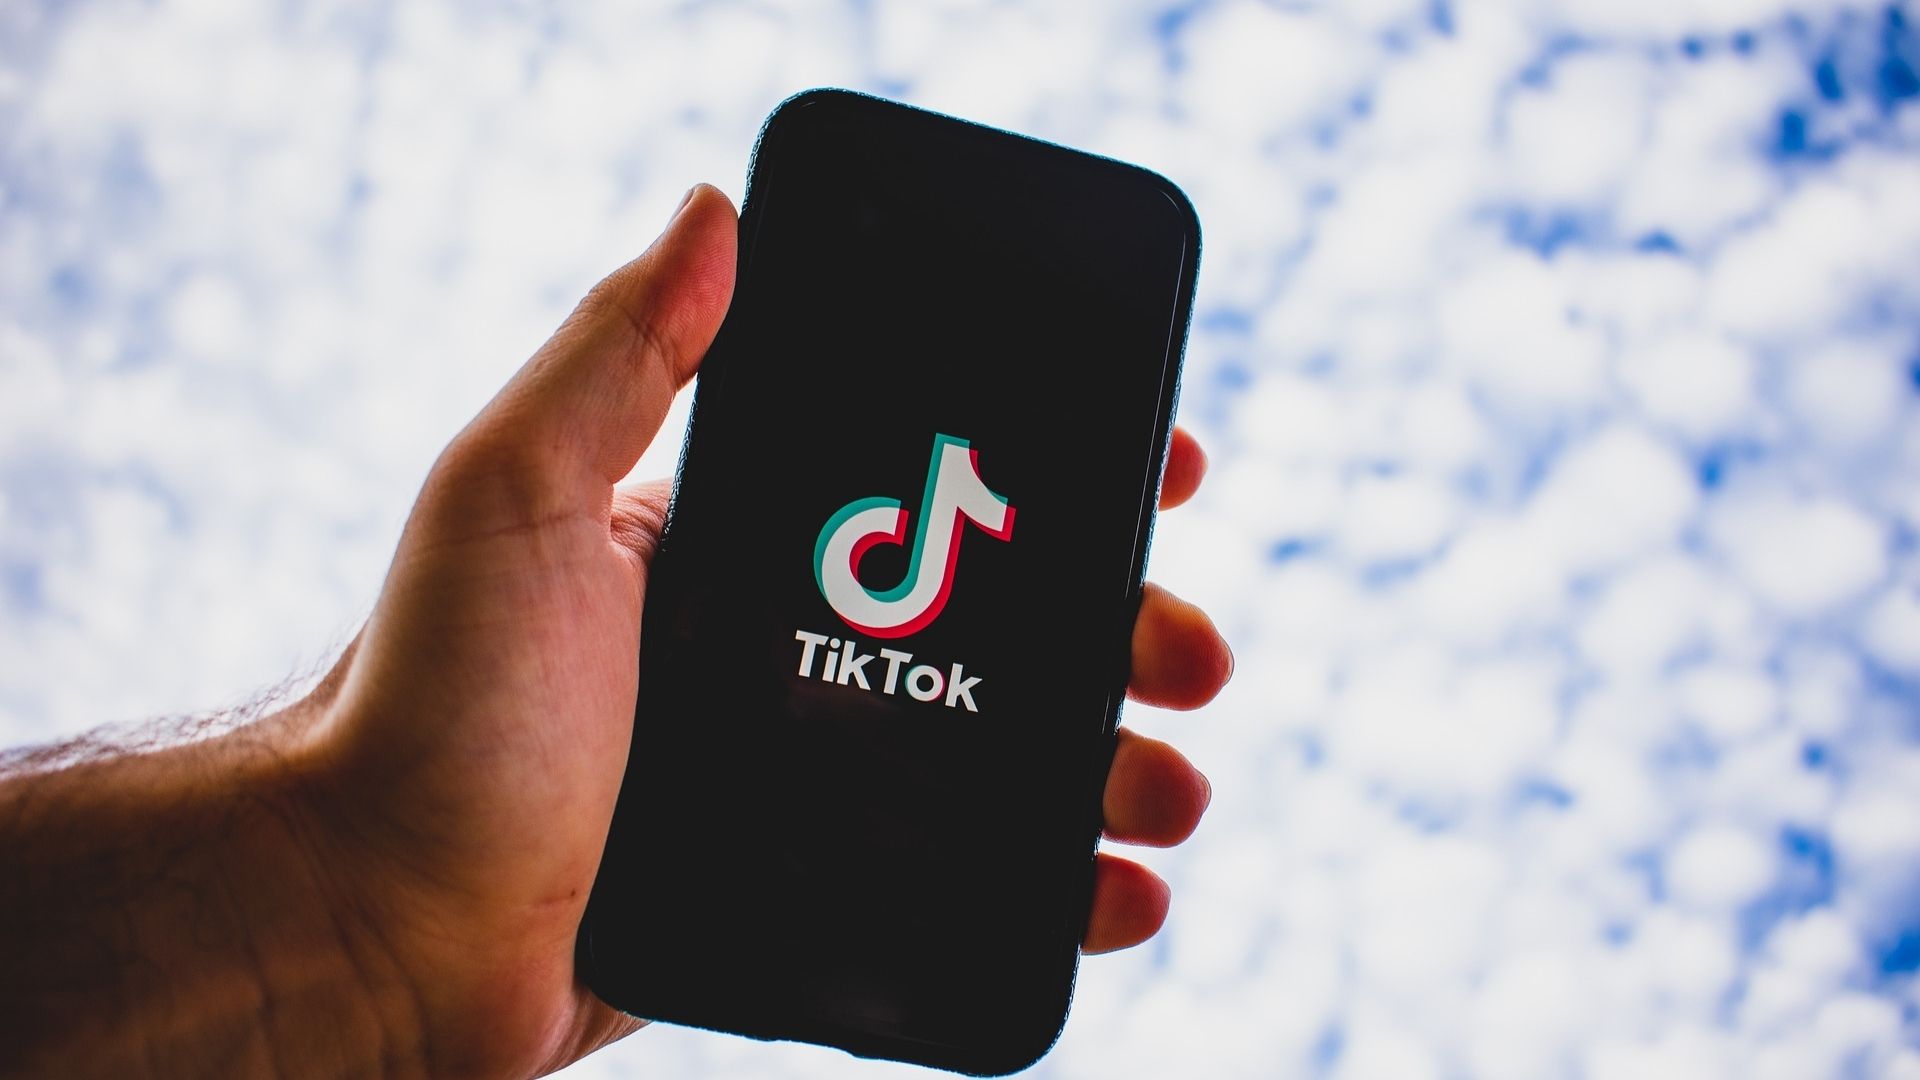 La red social dará a conocer los nominados a los Tik Tok Awards